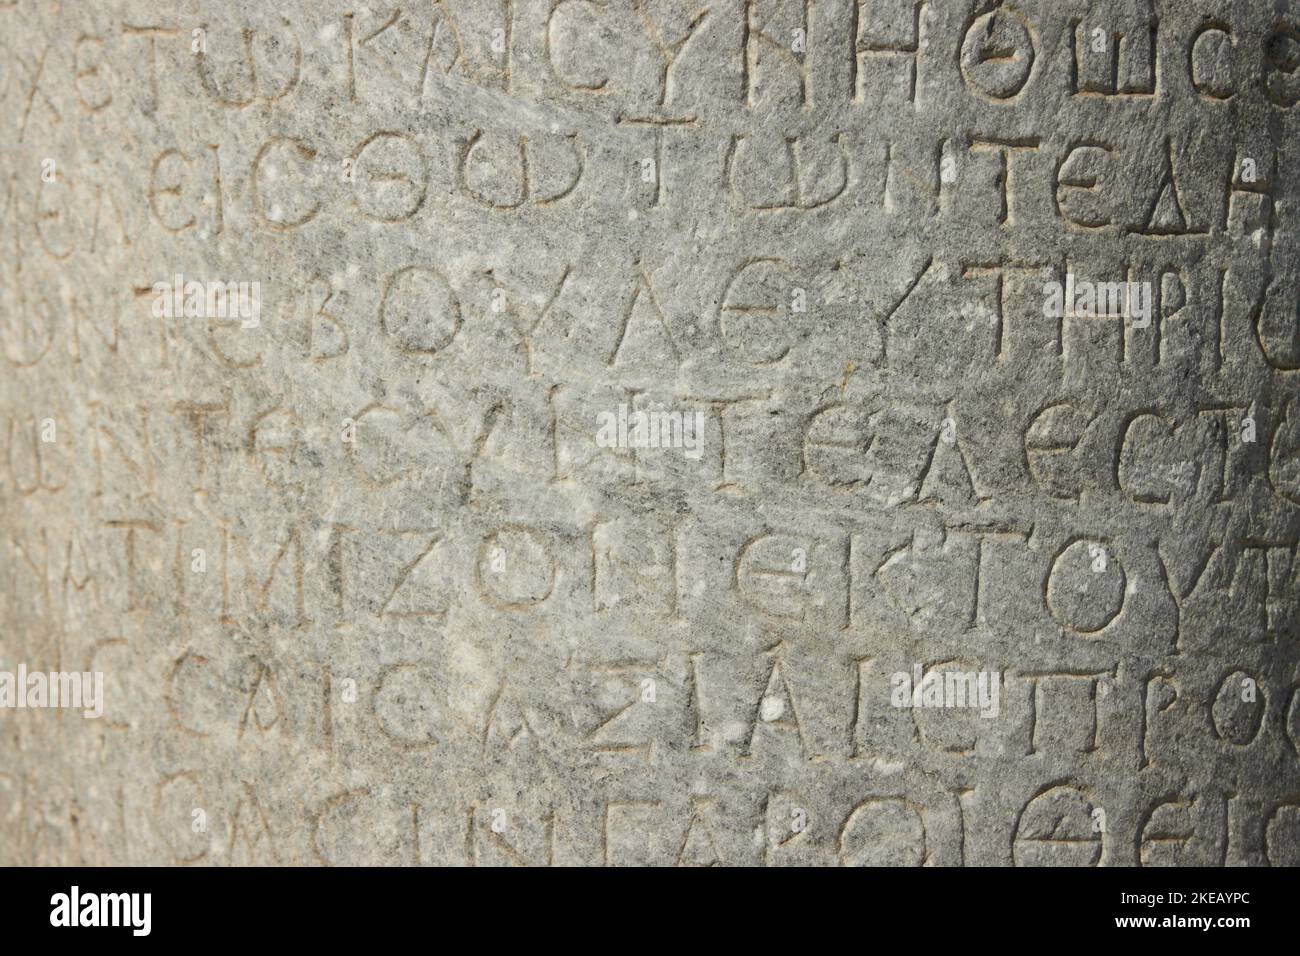 Die antike Inschrift befindet sich auf der antiken Säule oder der Wand. altgriechische Sprache Stockfoto